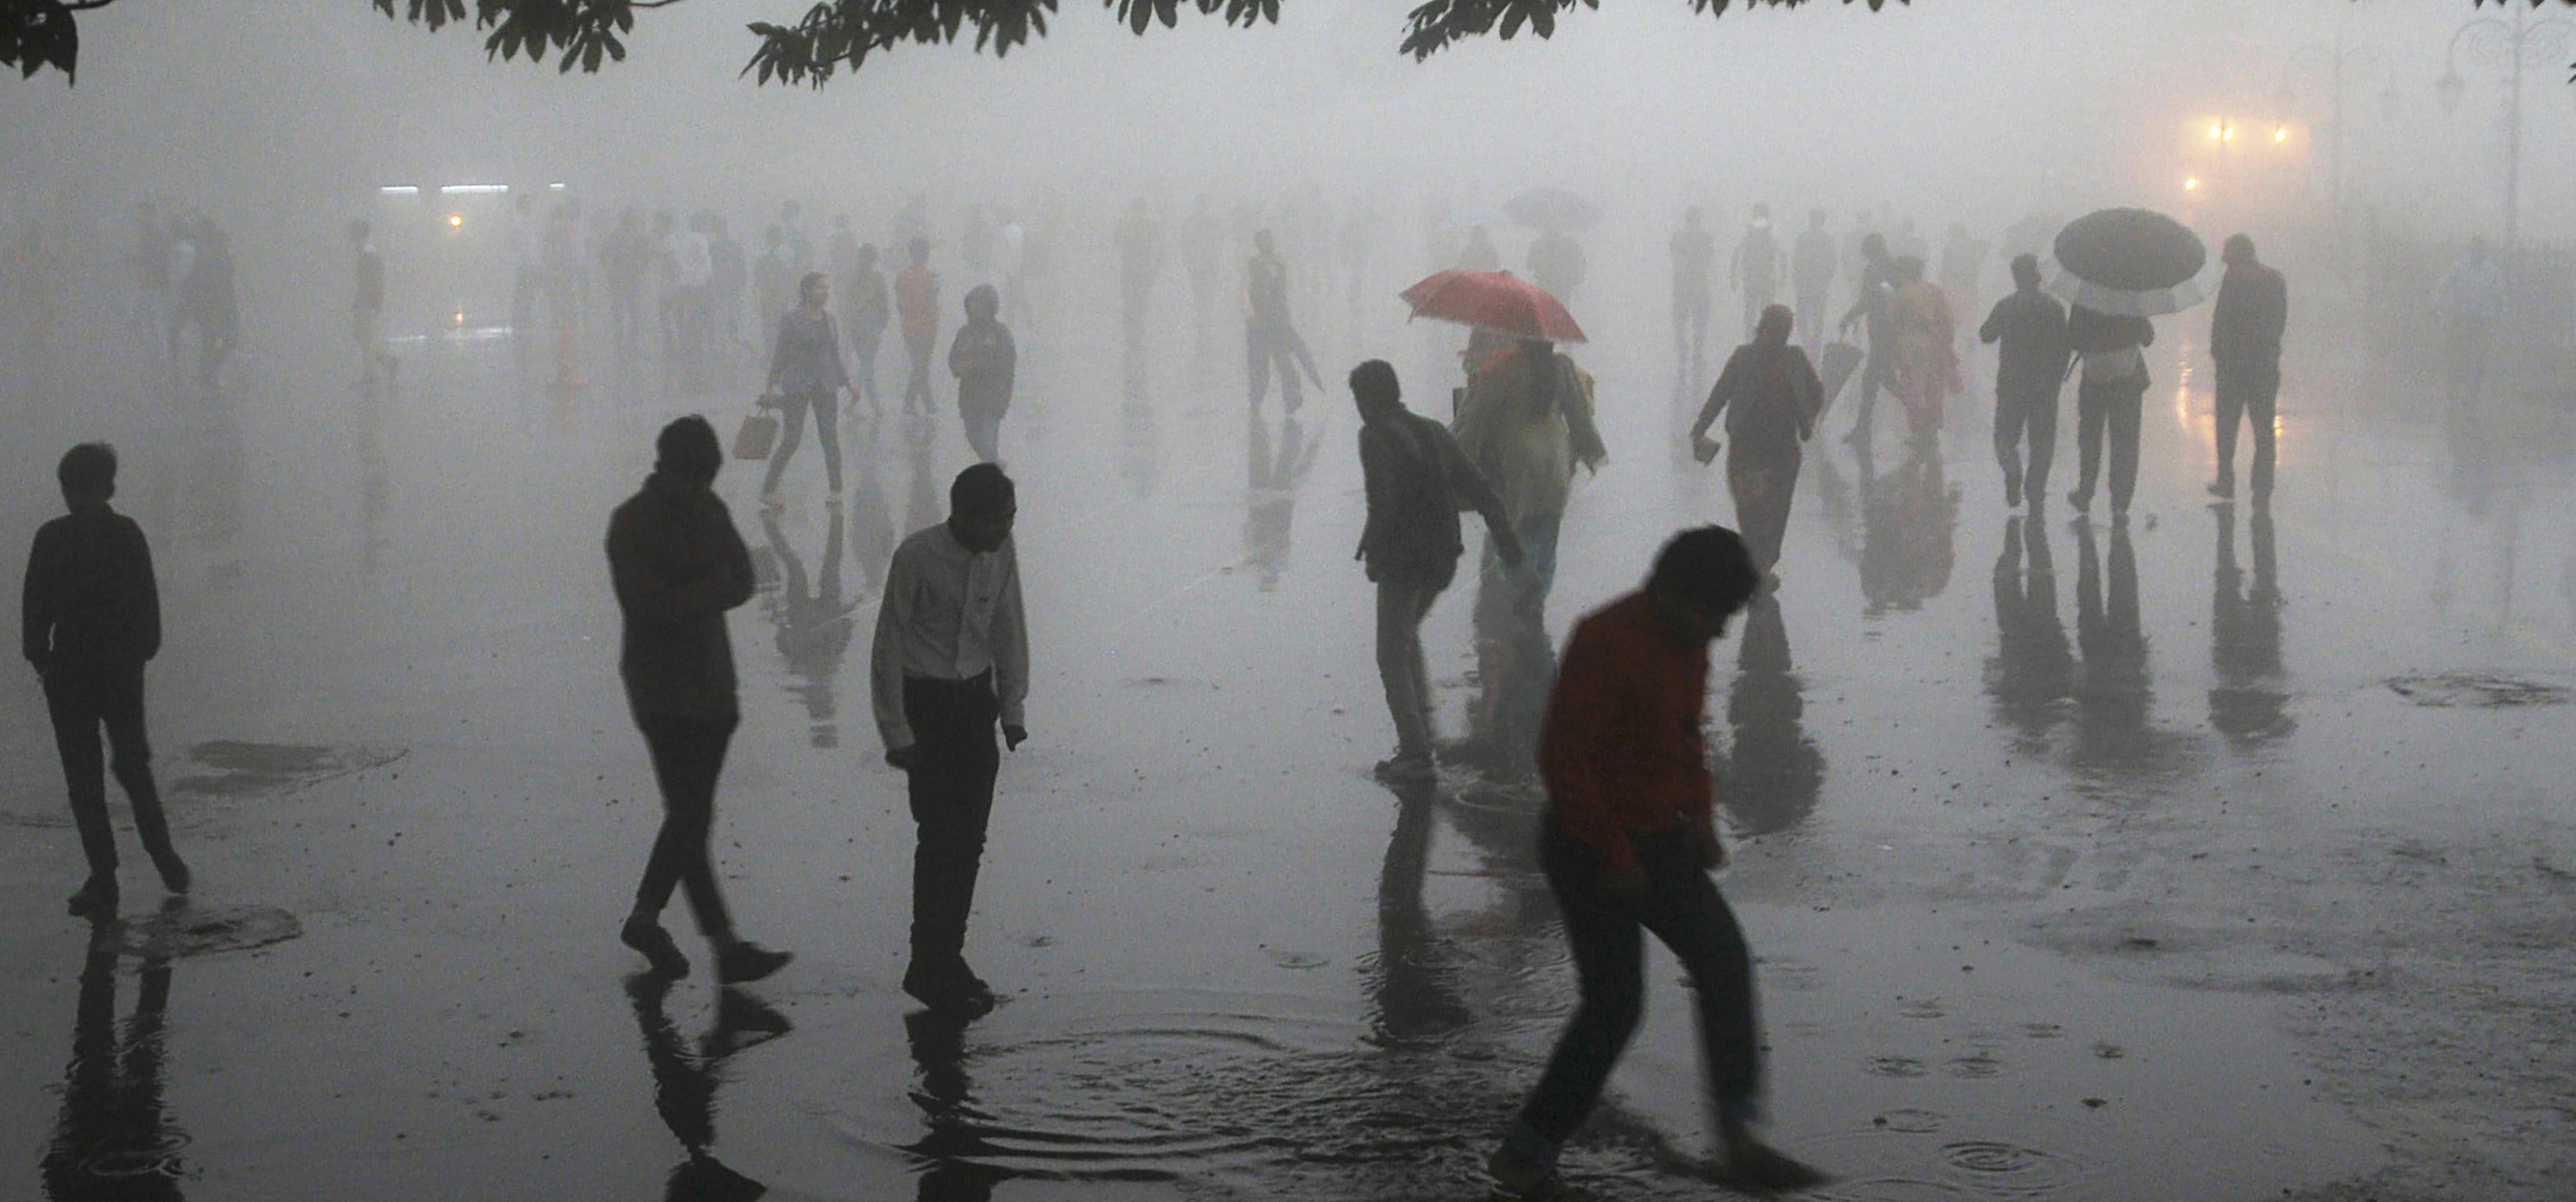 हरियाणा और दिल्ली एनसीआर में बारिश के साथ आधी-तूफान की आशंका: मौसम विभाग